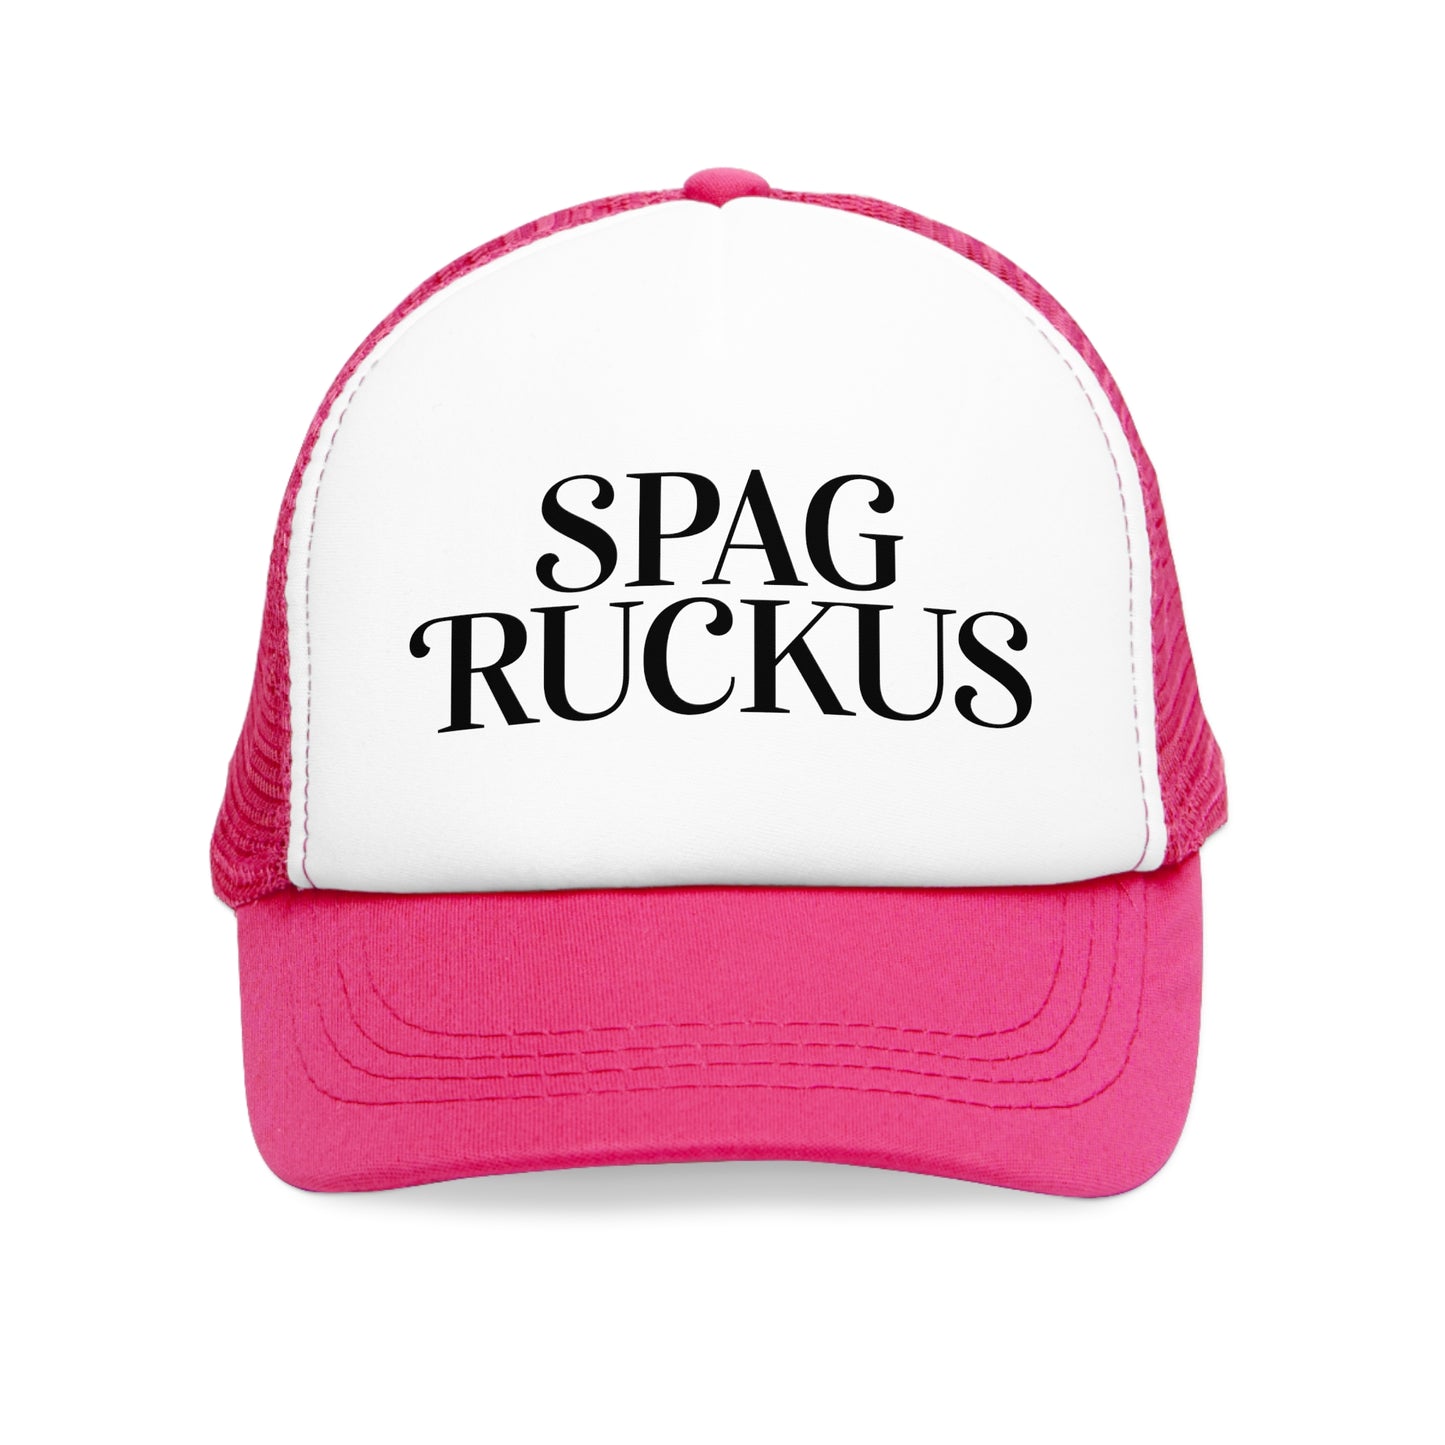 EUROPE - Spag Ruckus classic - Mesh Cap